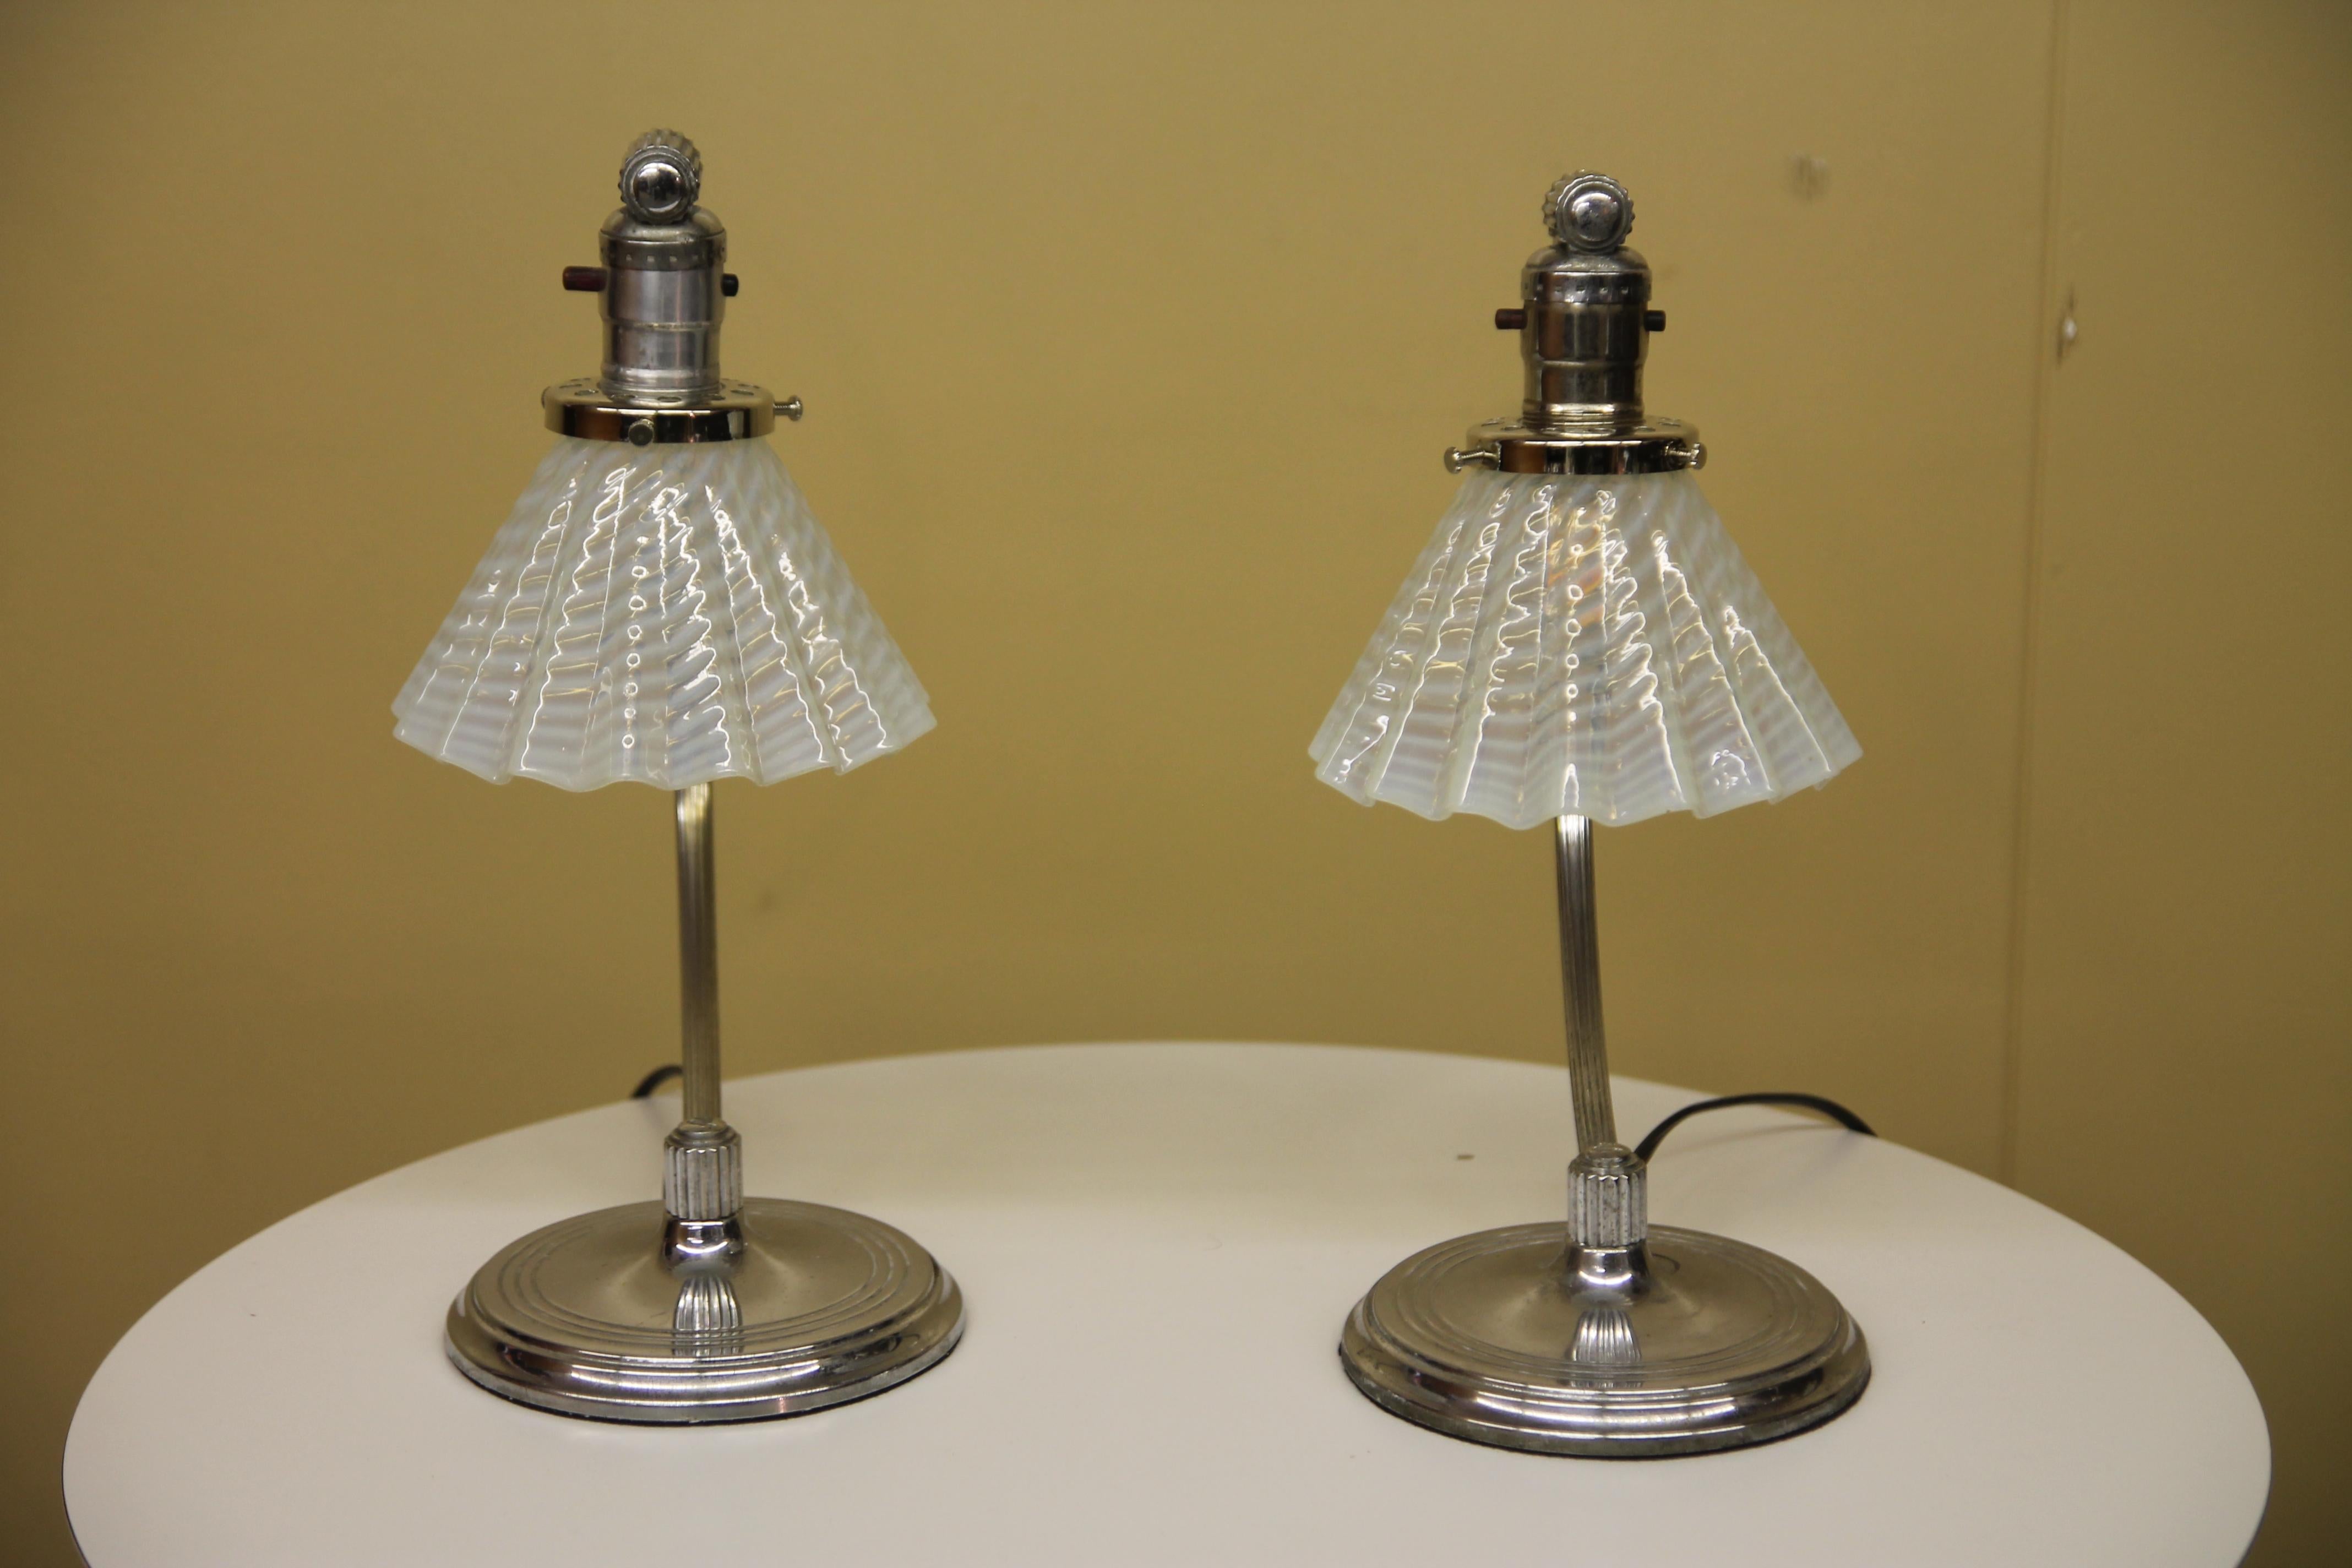 Wunderschönes Lampenpaar von Chase mit Vintage-Vaseline-Glasschirm. Die Lampen wurden neu verkabelt und sehen mit oder ohne Licht gut aus.
 